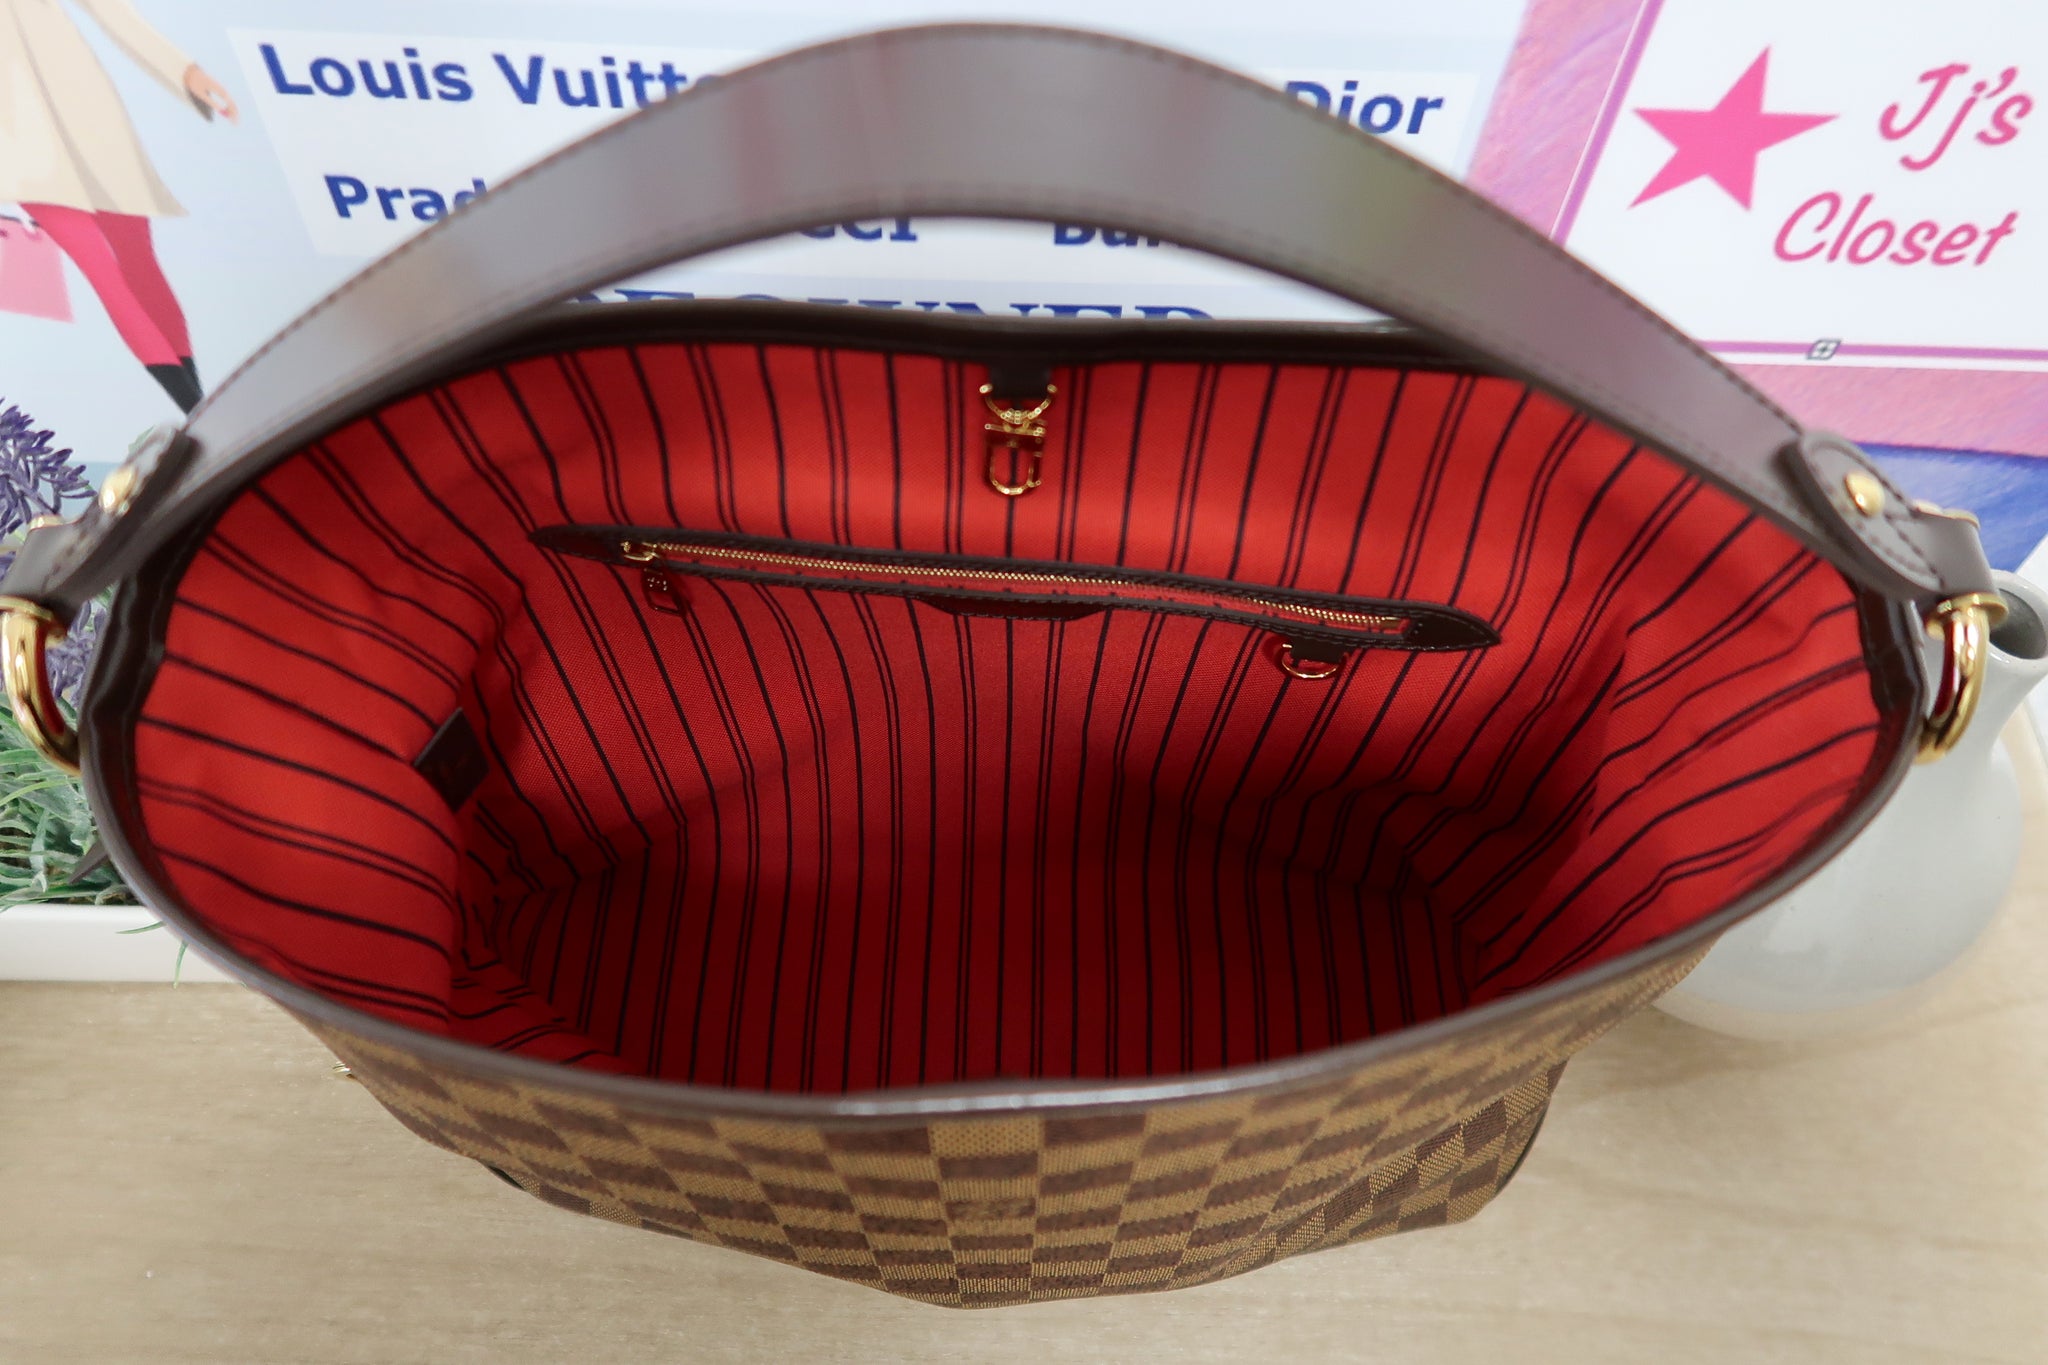 At Auction: Louis Vuitton, LOUIS VUITTON DELIGHTFUL PM BAG W/ BOX